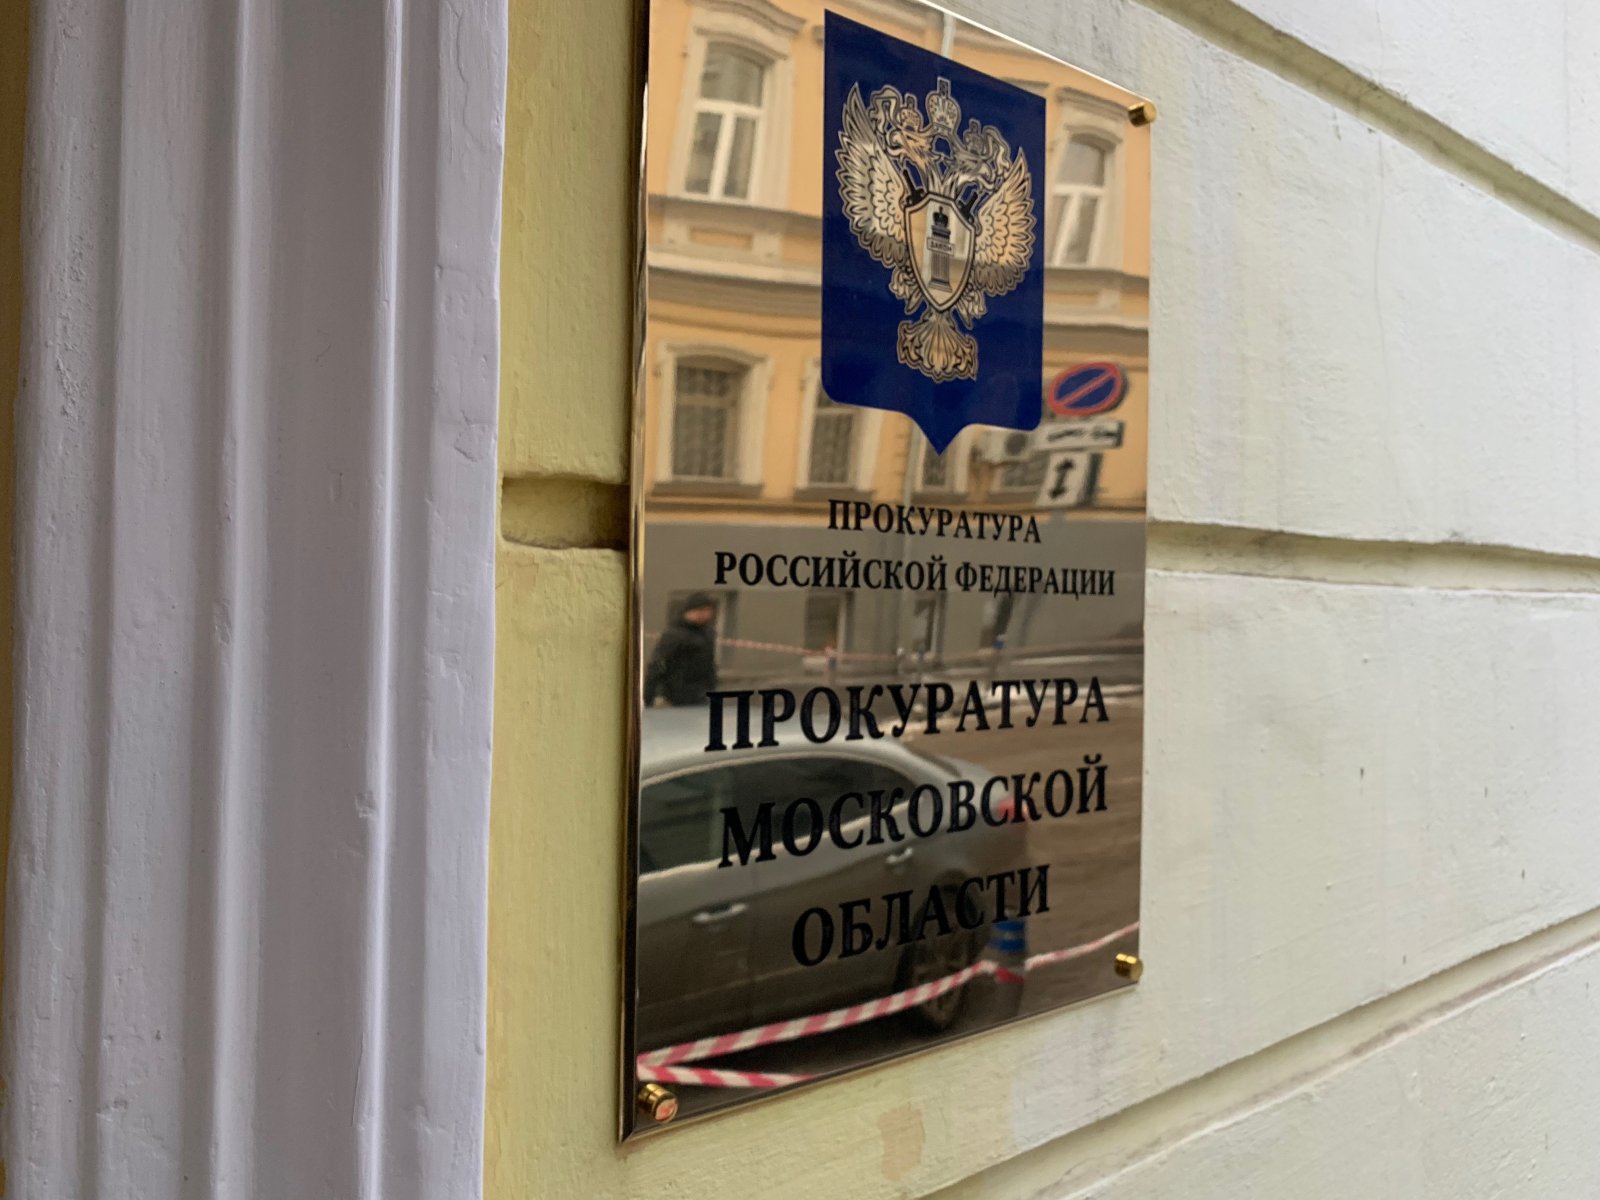 Дело о гибели двух человек из-за утечки газа в квартире Подольска направлено в суд